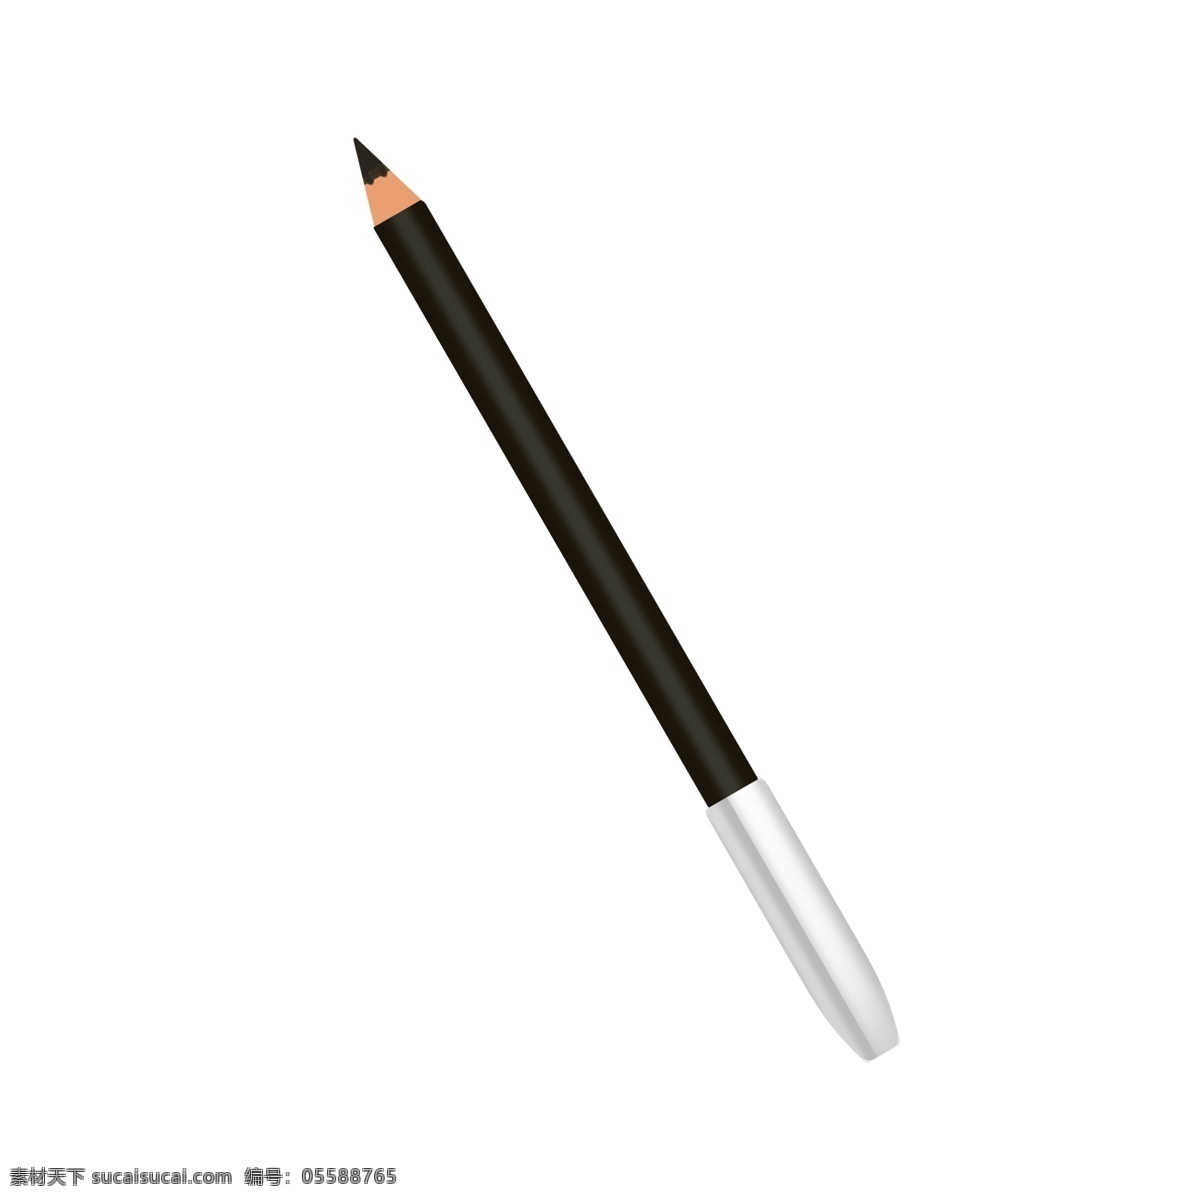 文具 铅笔 装饰 插画 黑色的铅笔 文具铅笔 漂亮的铅笔 创意铅笔 立体铅笔 卡通铅笔 时尚铅笔